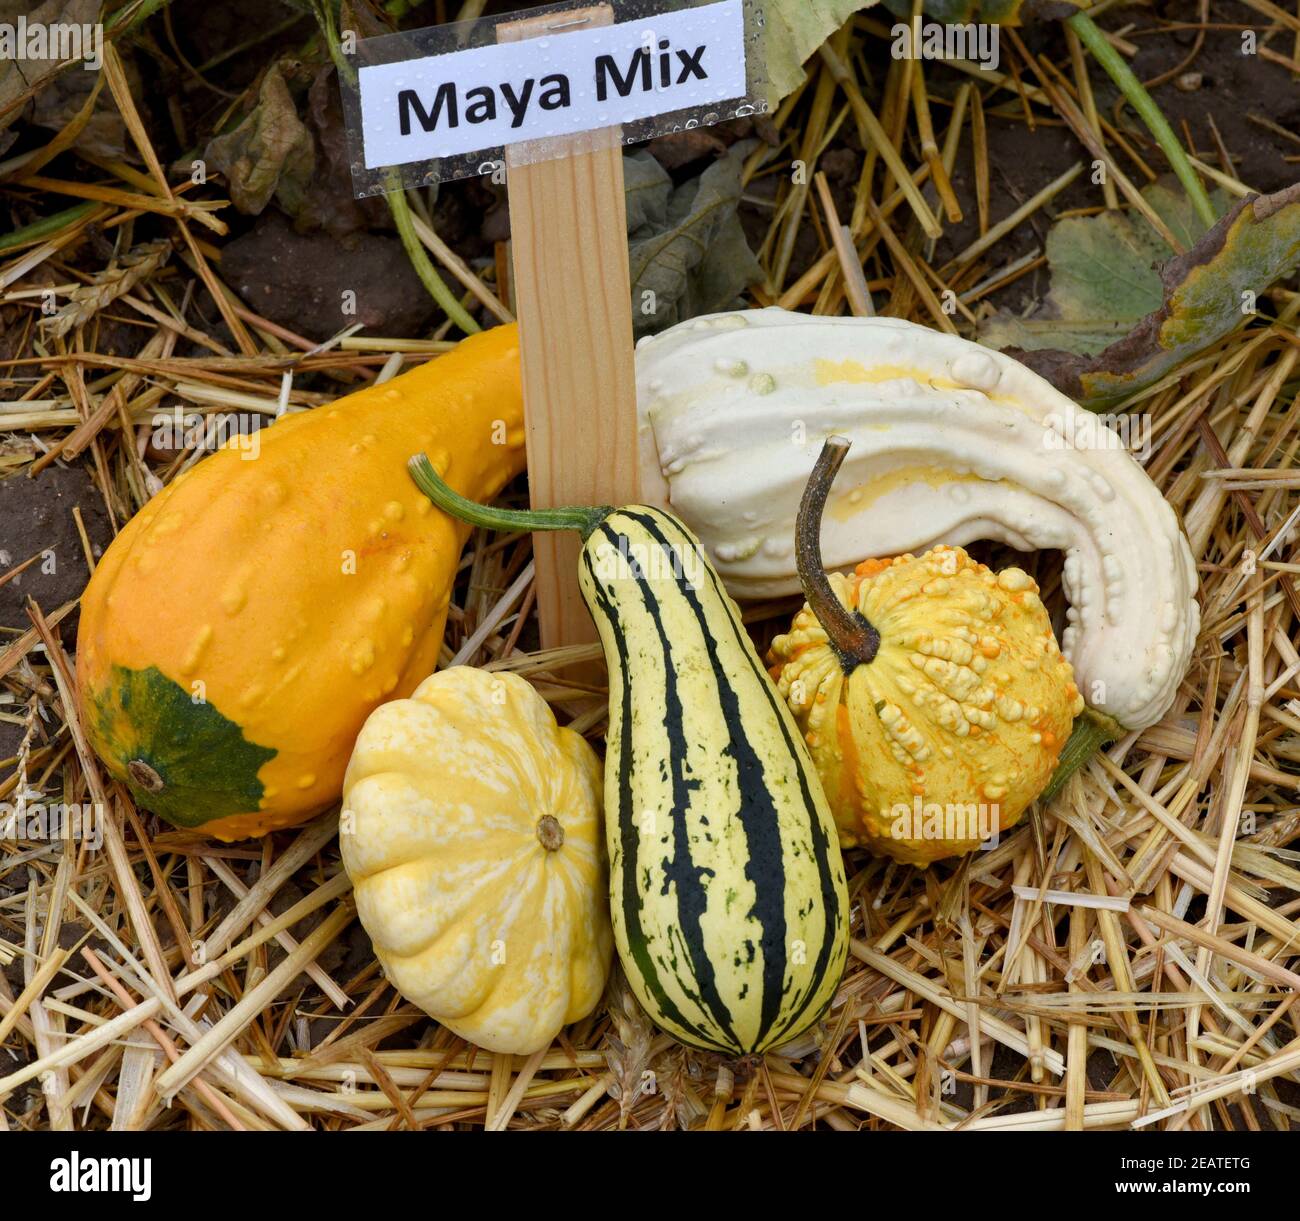 Maya Mix, Zierkuerbis, Kuerbis Banque D'Images